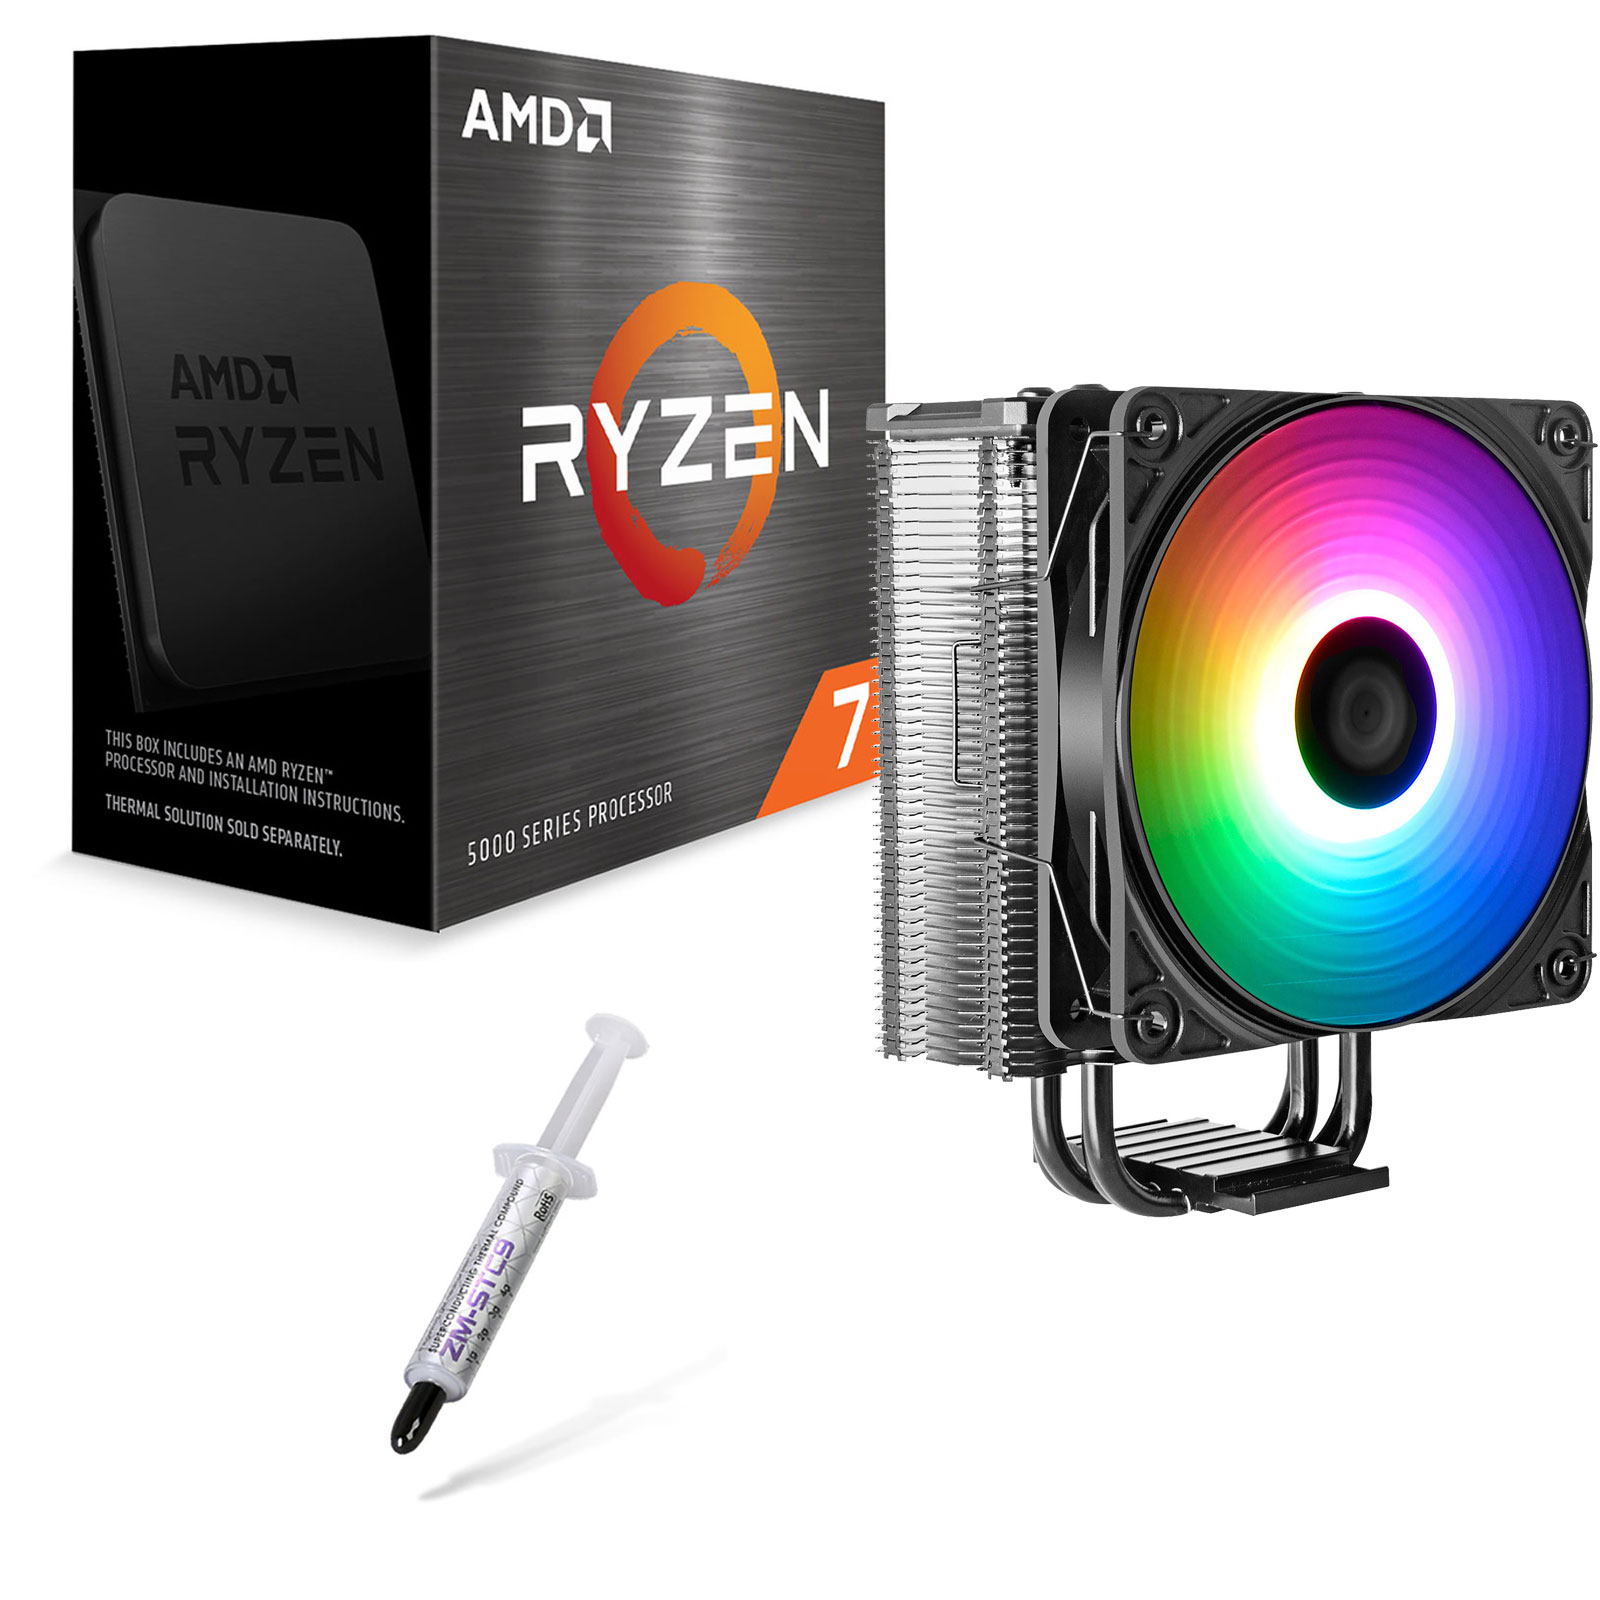 Noctua présente un accessoire pour éviter de faire déborder la pate  thermique sur les nouveaux AMD Ryzen